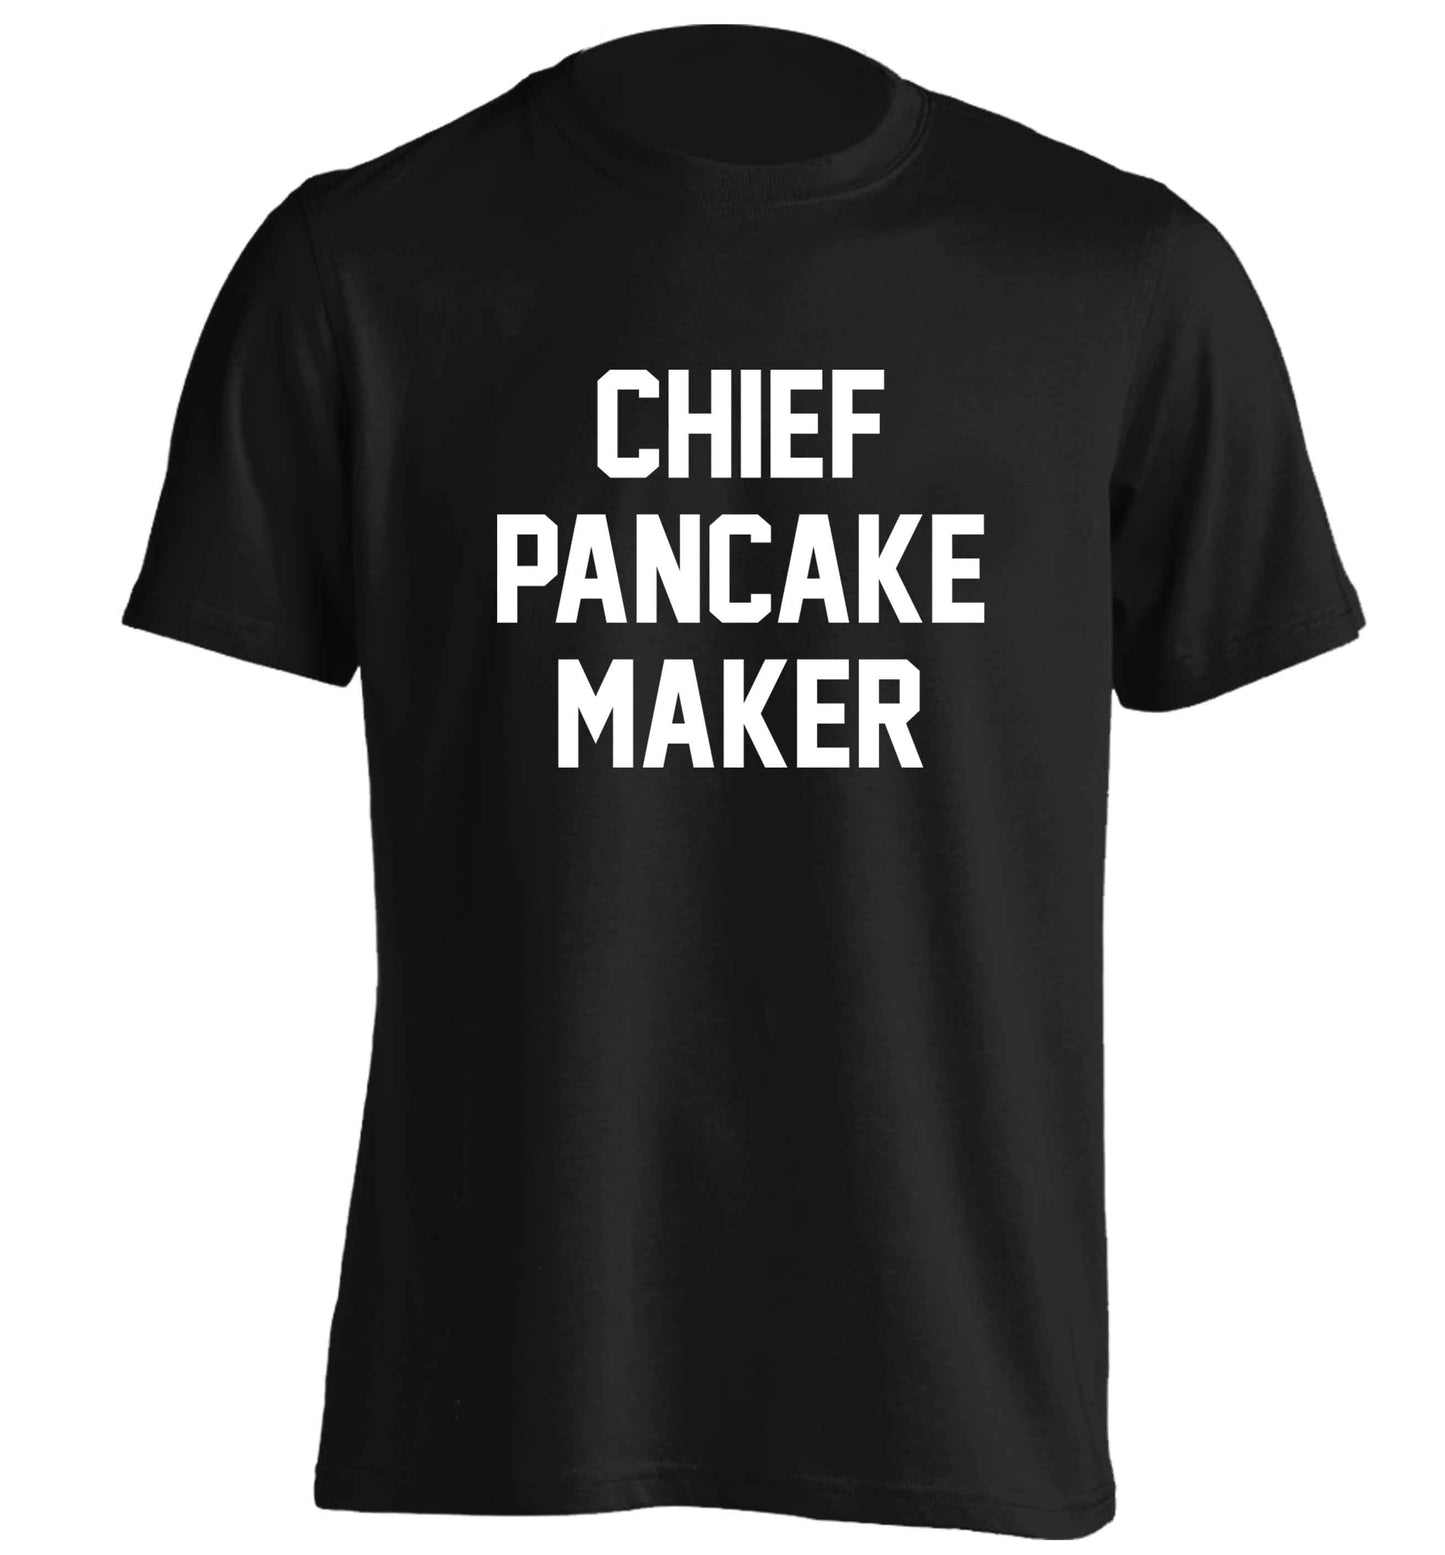 Chief pancake maker adults unisex black Tshirt 2XL